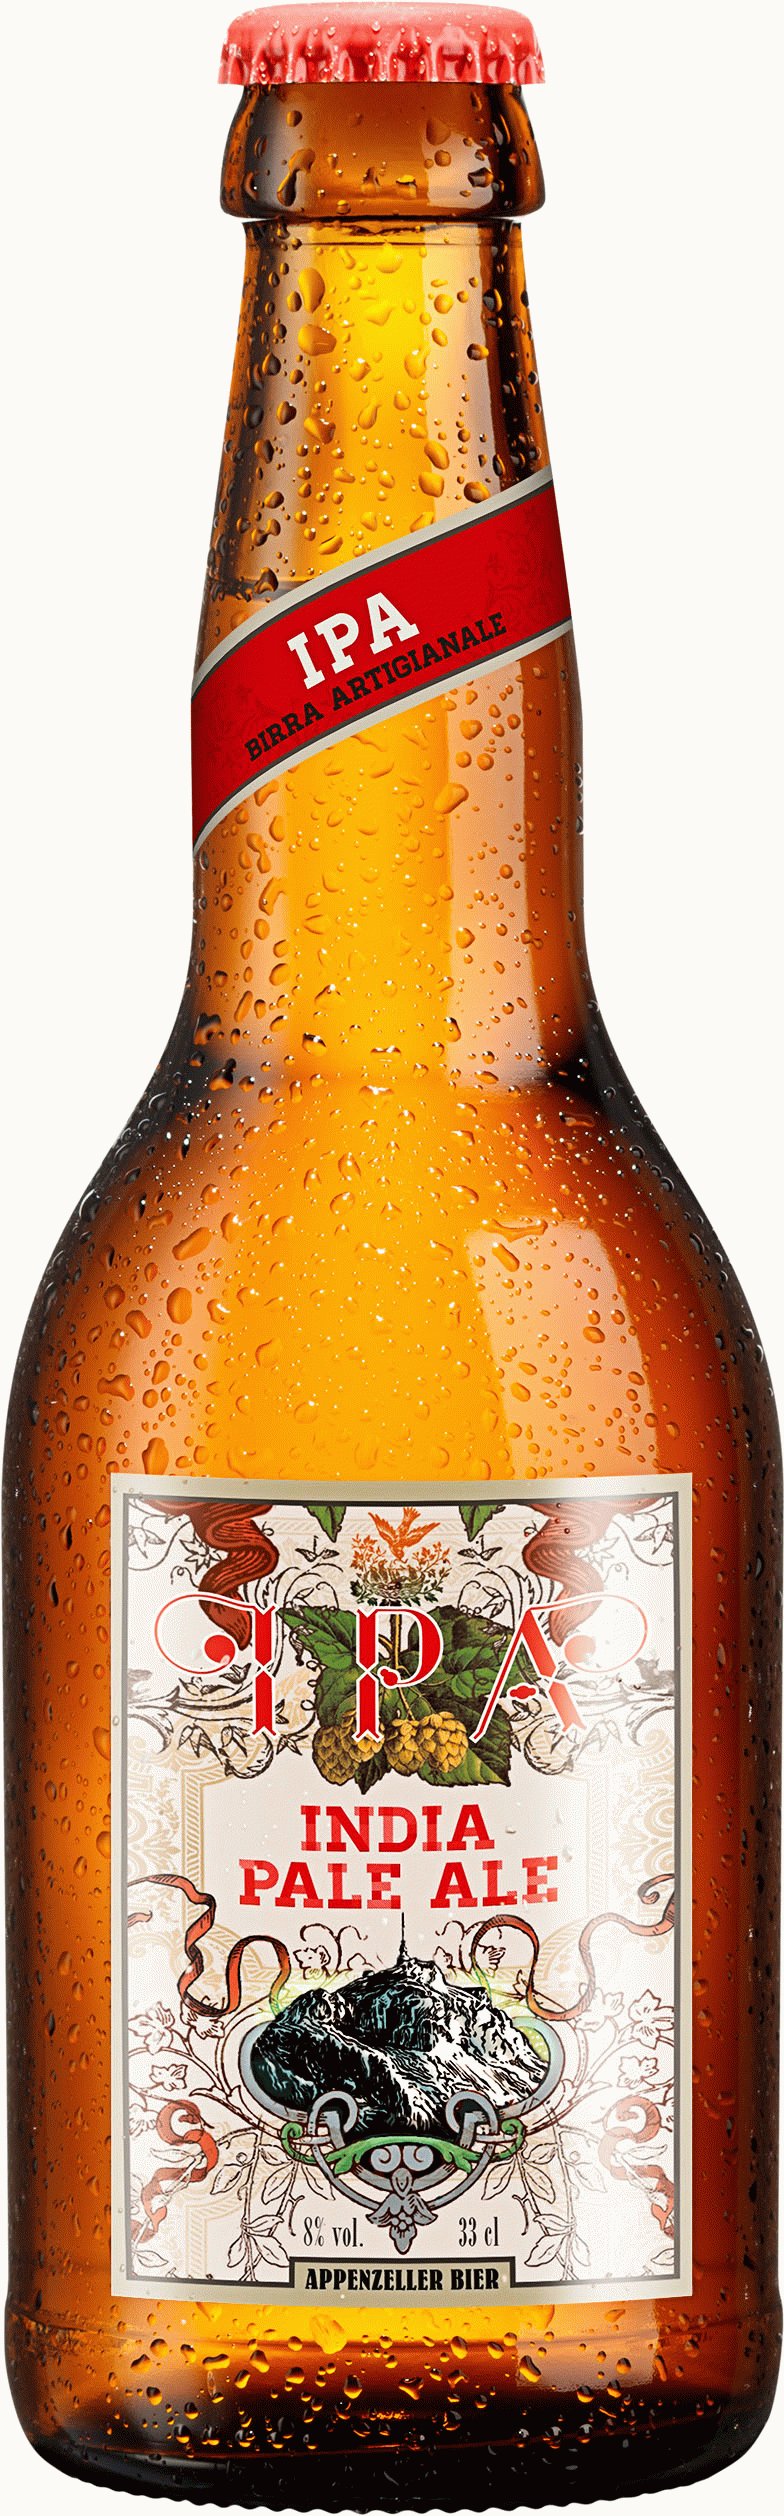 Appenzeller Bier India Pale Ale 